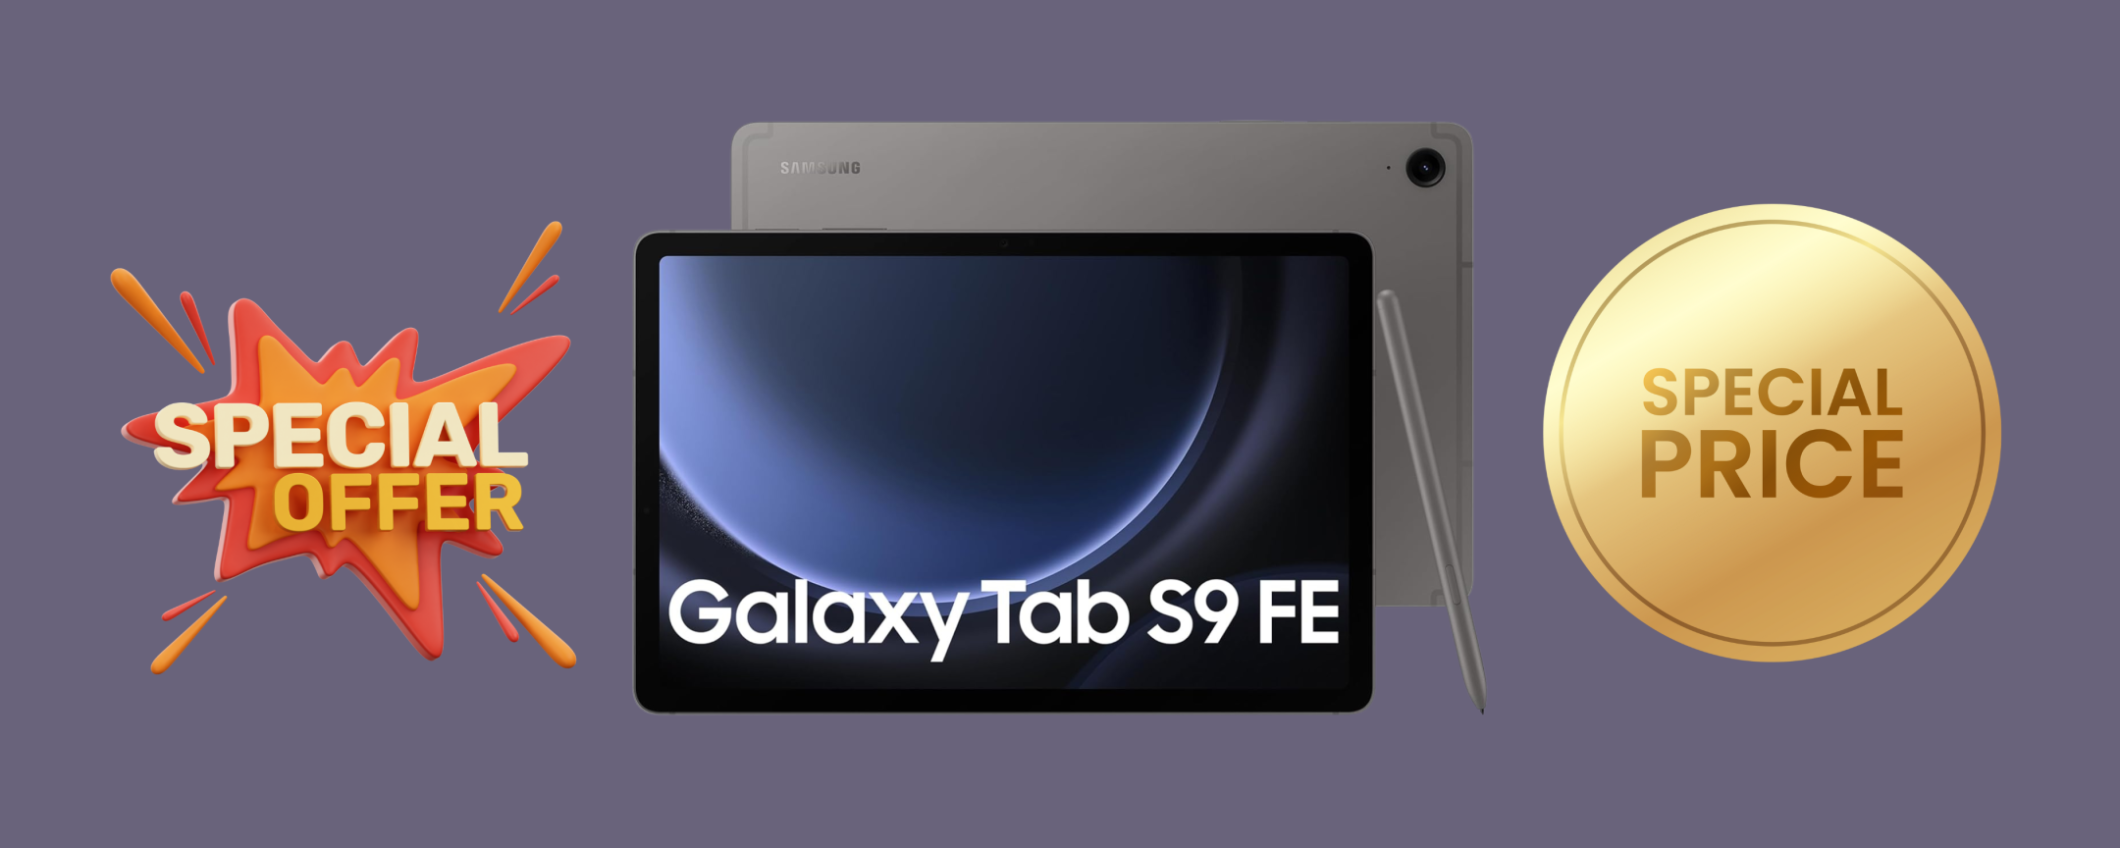 Samsung Galaxy Tab S9 FE con 256 GB a SOLI 536,49€